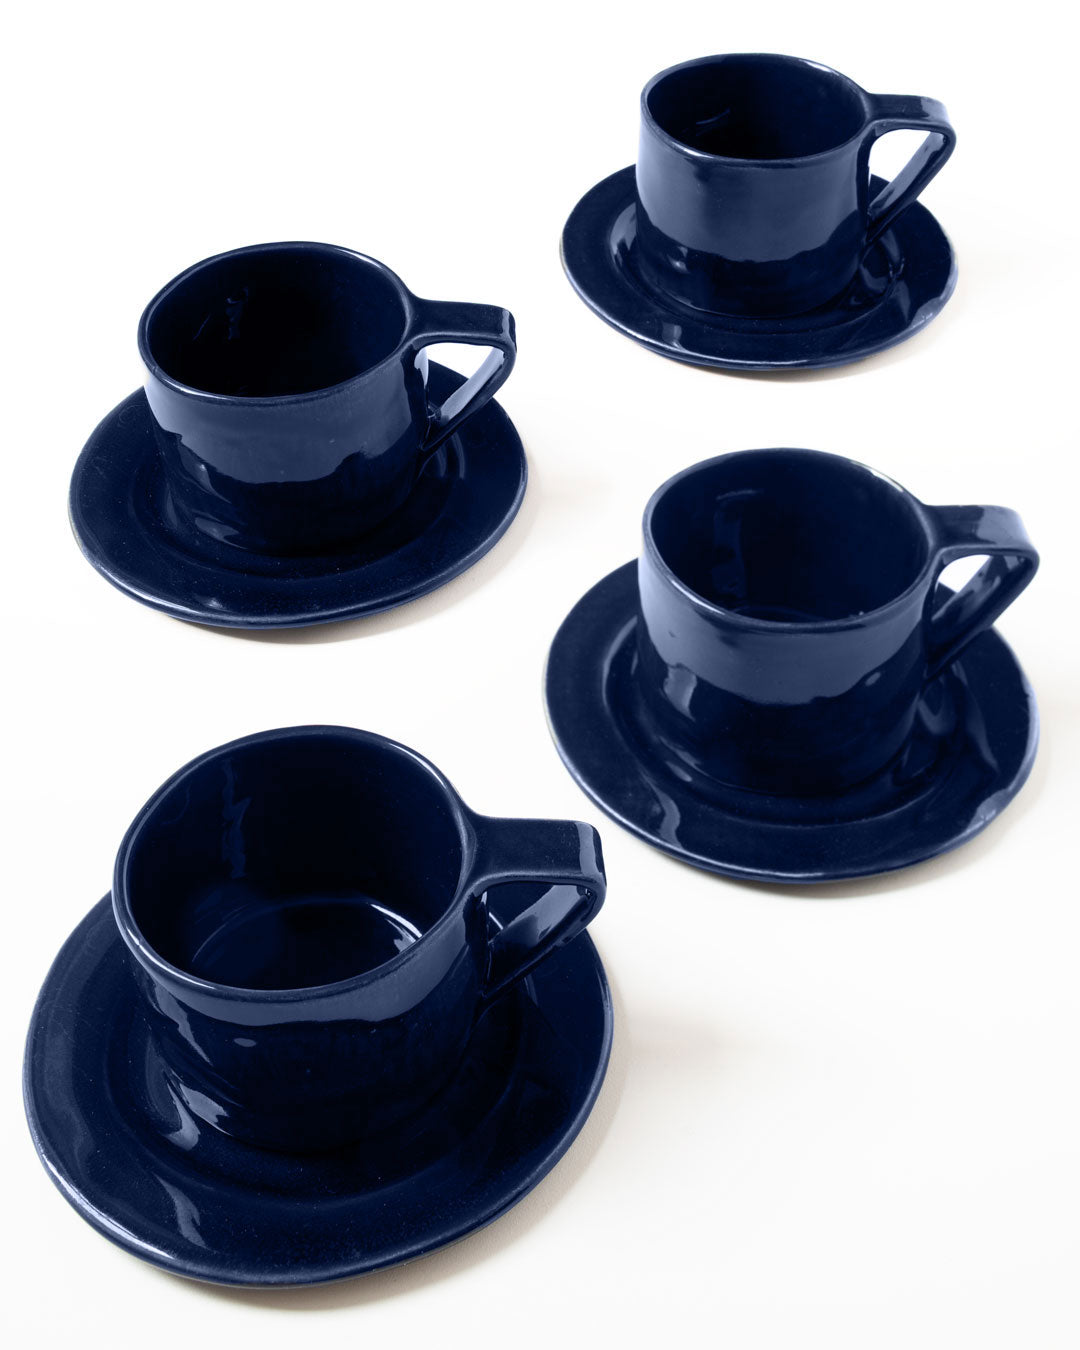 https://ta-daan.com/cdn/shop/products/Espresso-Cup-blue_1_4_92e80711-def9-4cc2-8563-467989cffc5a.jpg?v=1681469499&width=1080